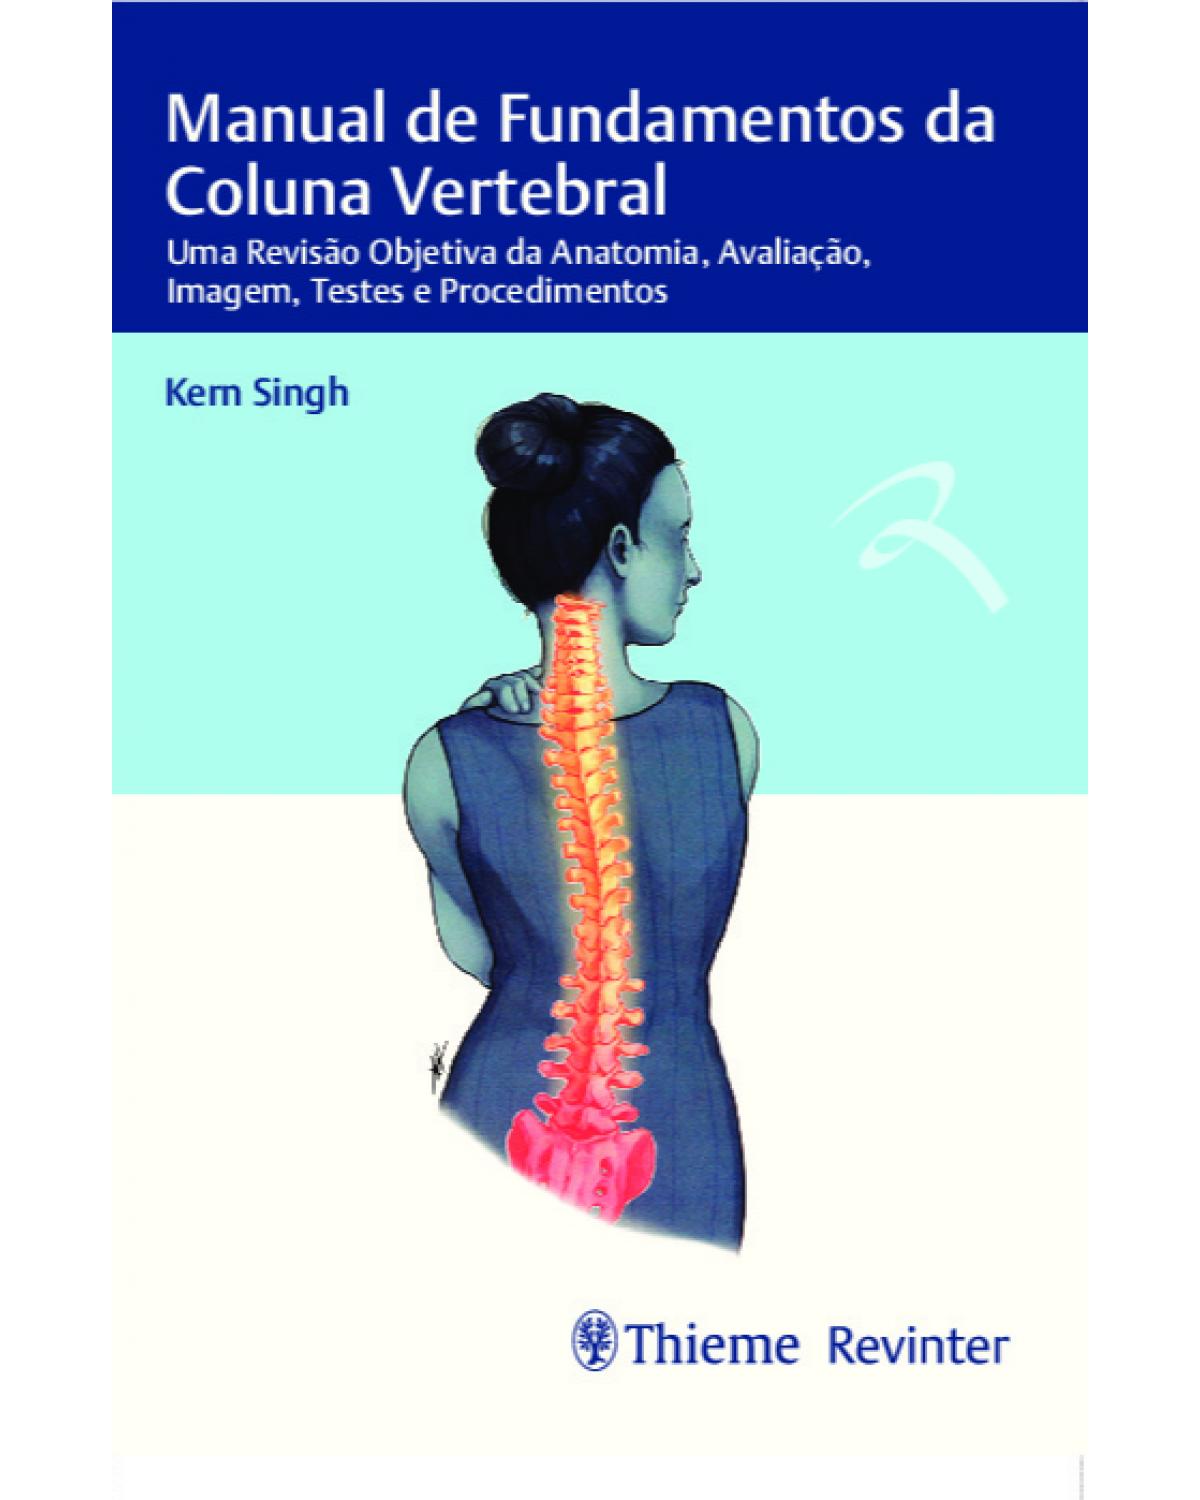 Manual de fundamentos da coluna vertebral - uma revisão objetiva da anatomia, avaliação, imagem, testes e procedimentos - 1ª Edição | 2019